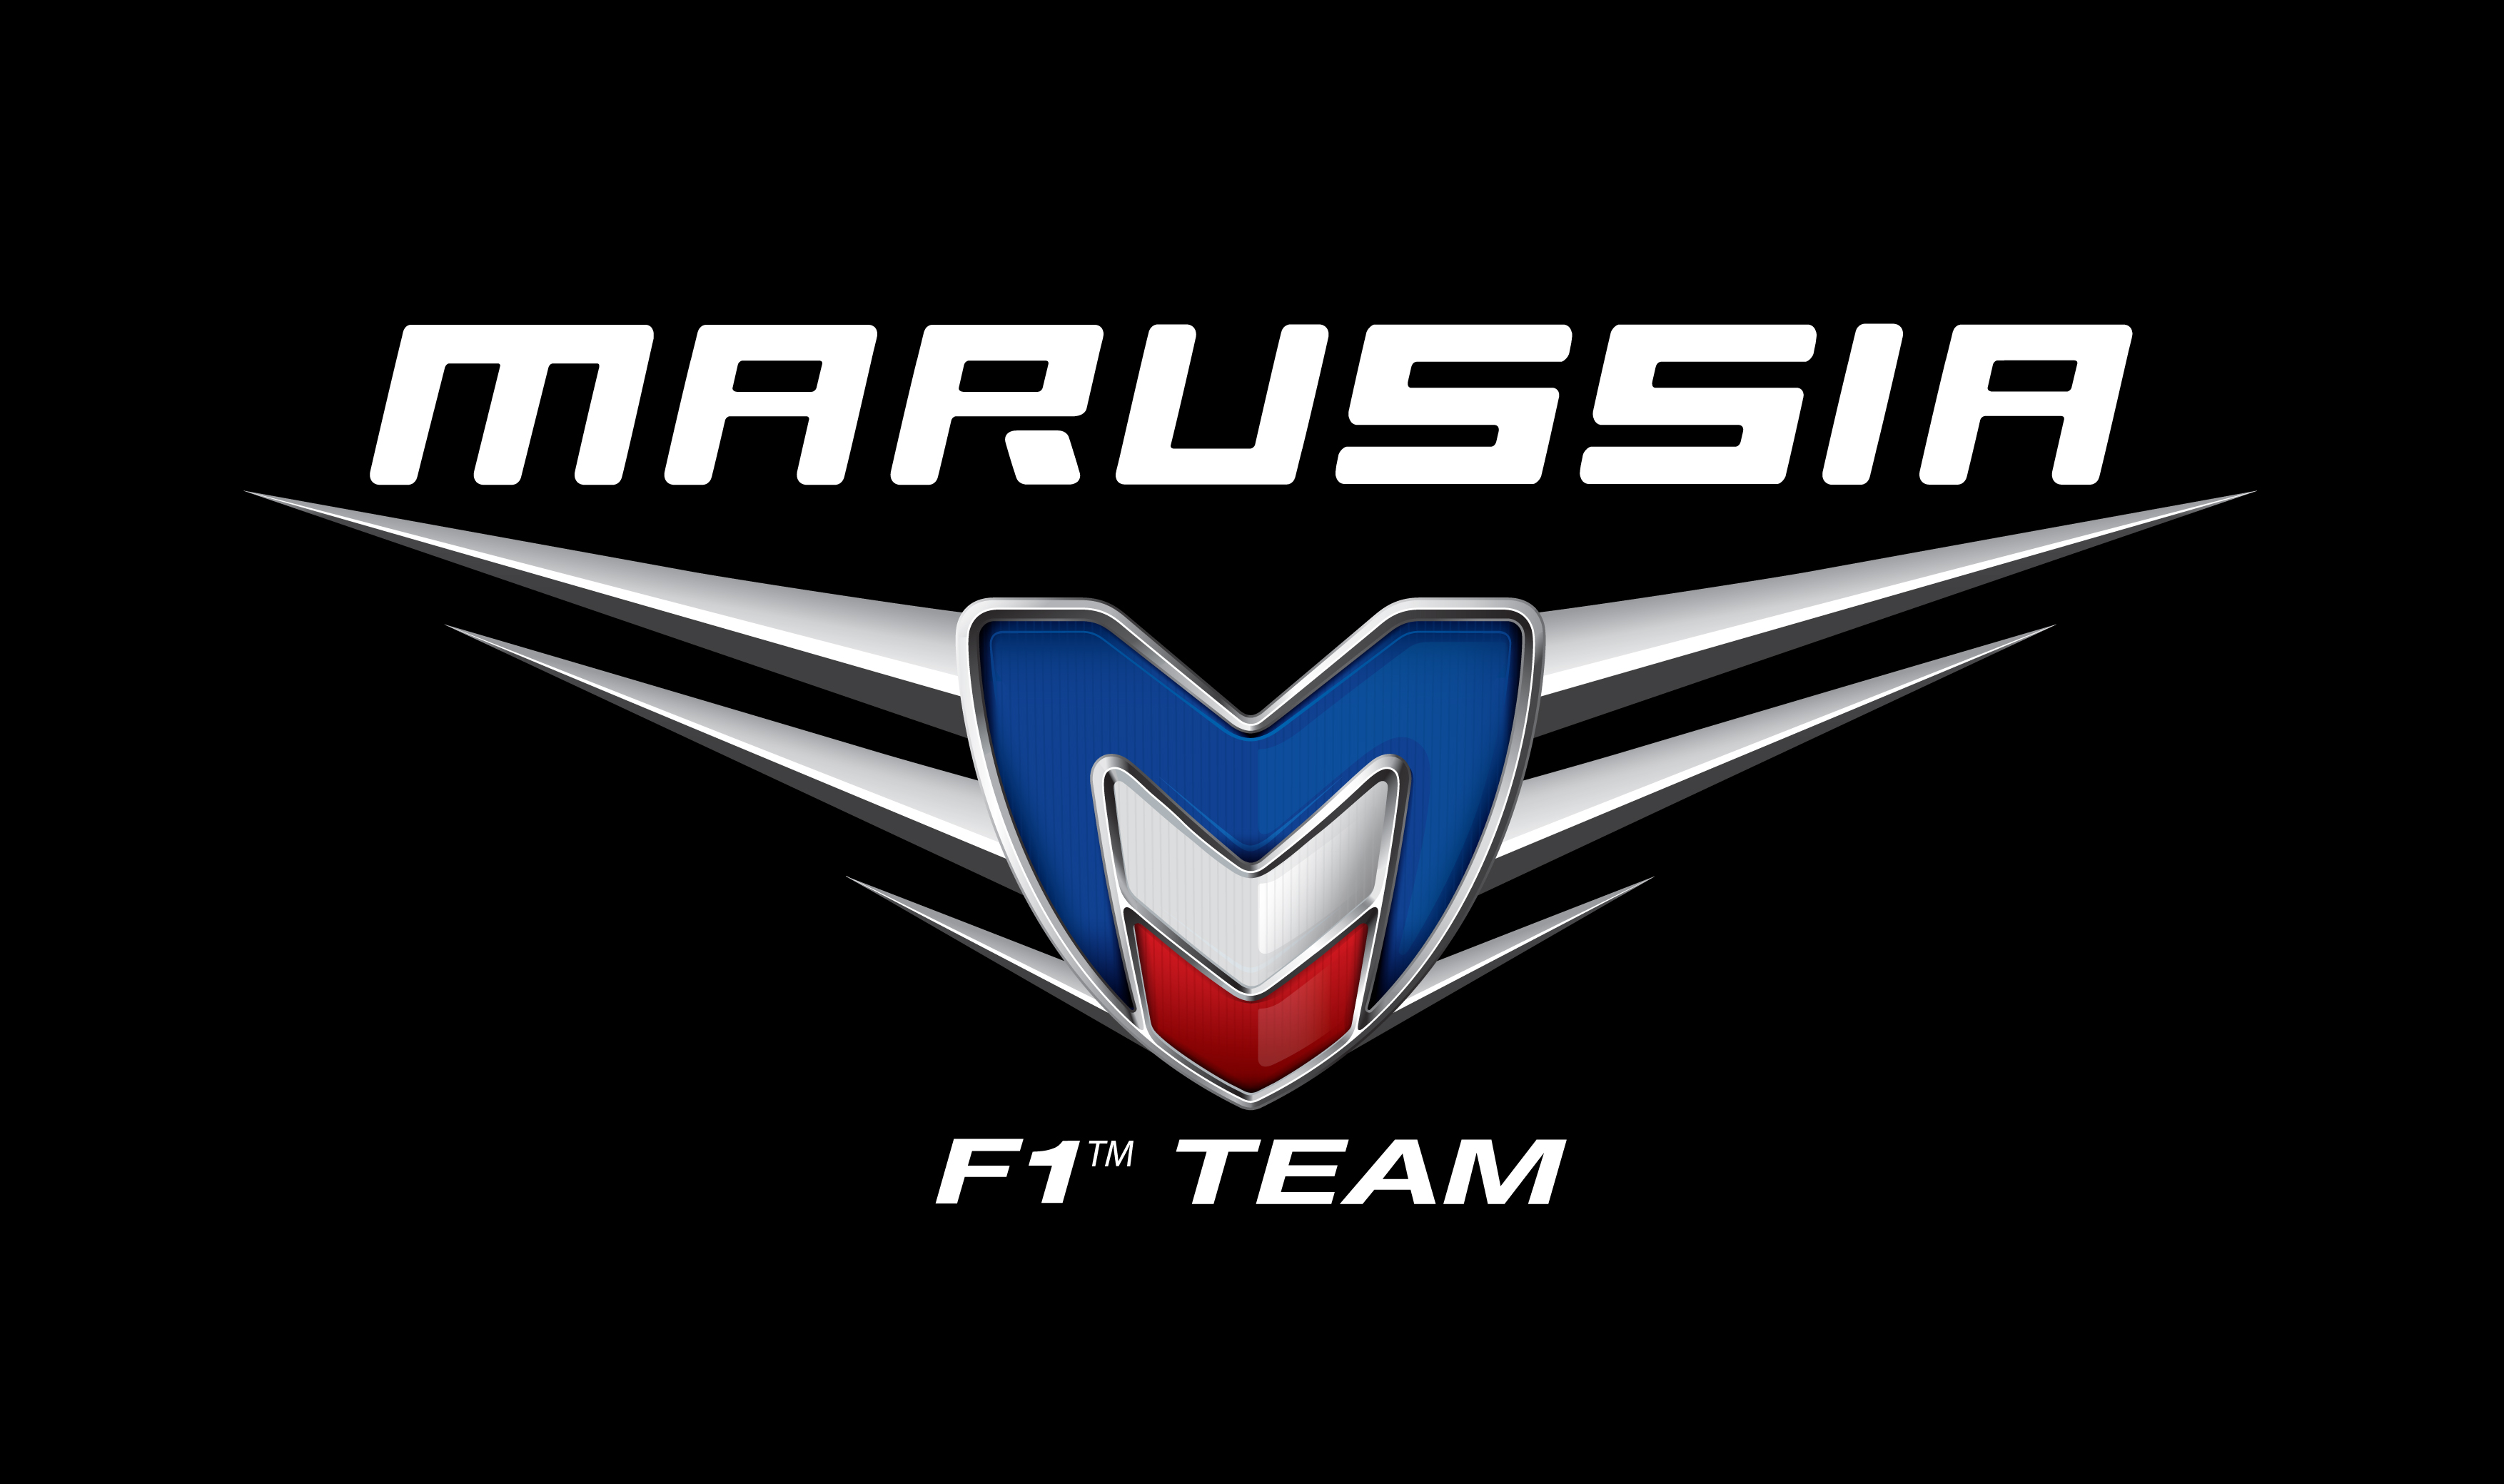 http://www.teamvvv.com/assets/js/ckeditor/kcfinder/upload/images/marussia-logo.jpg